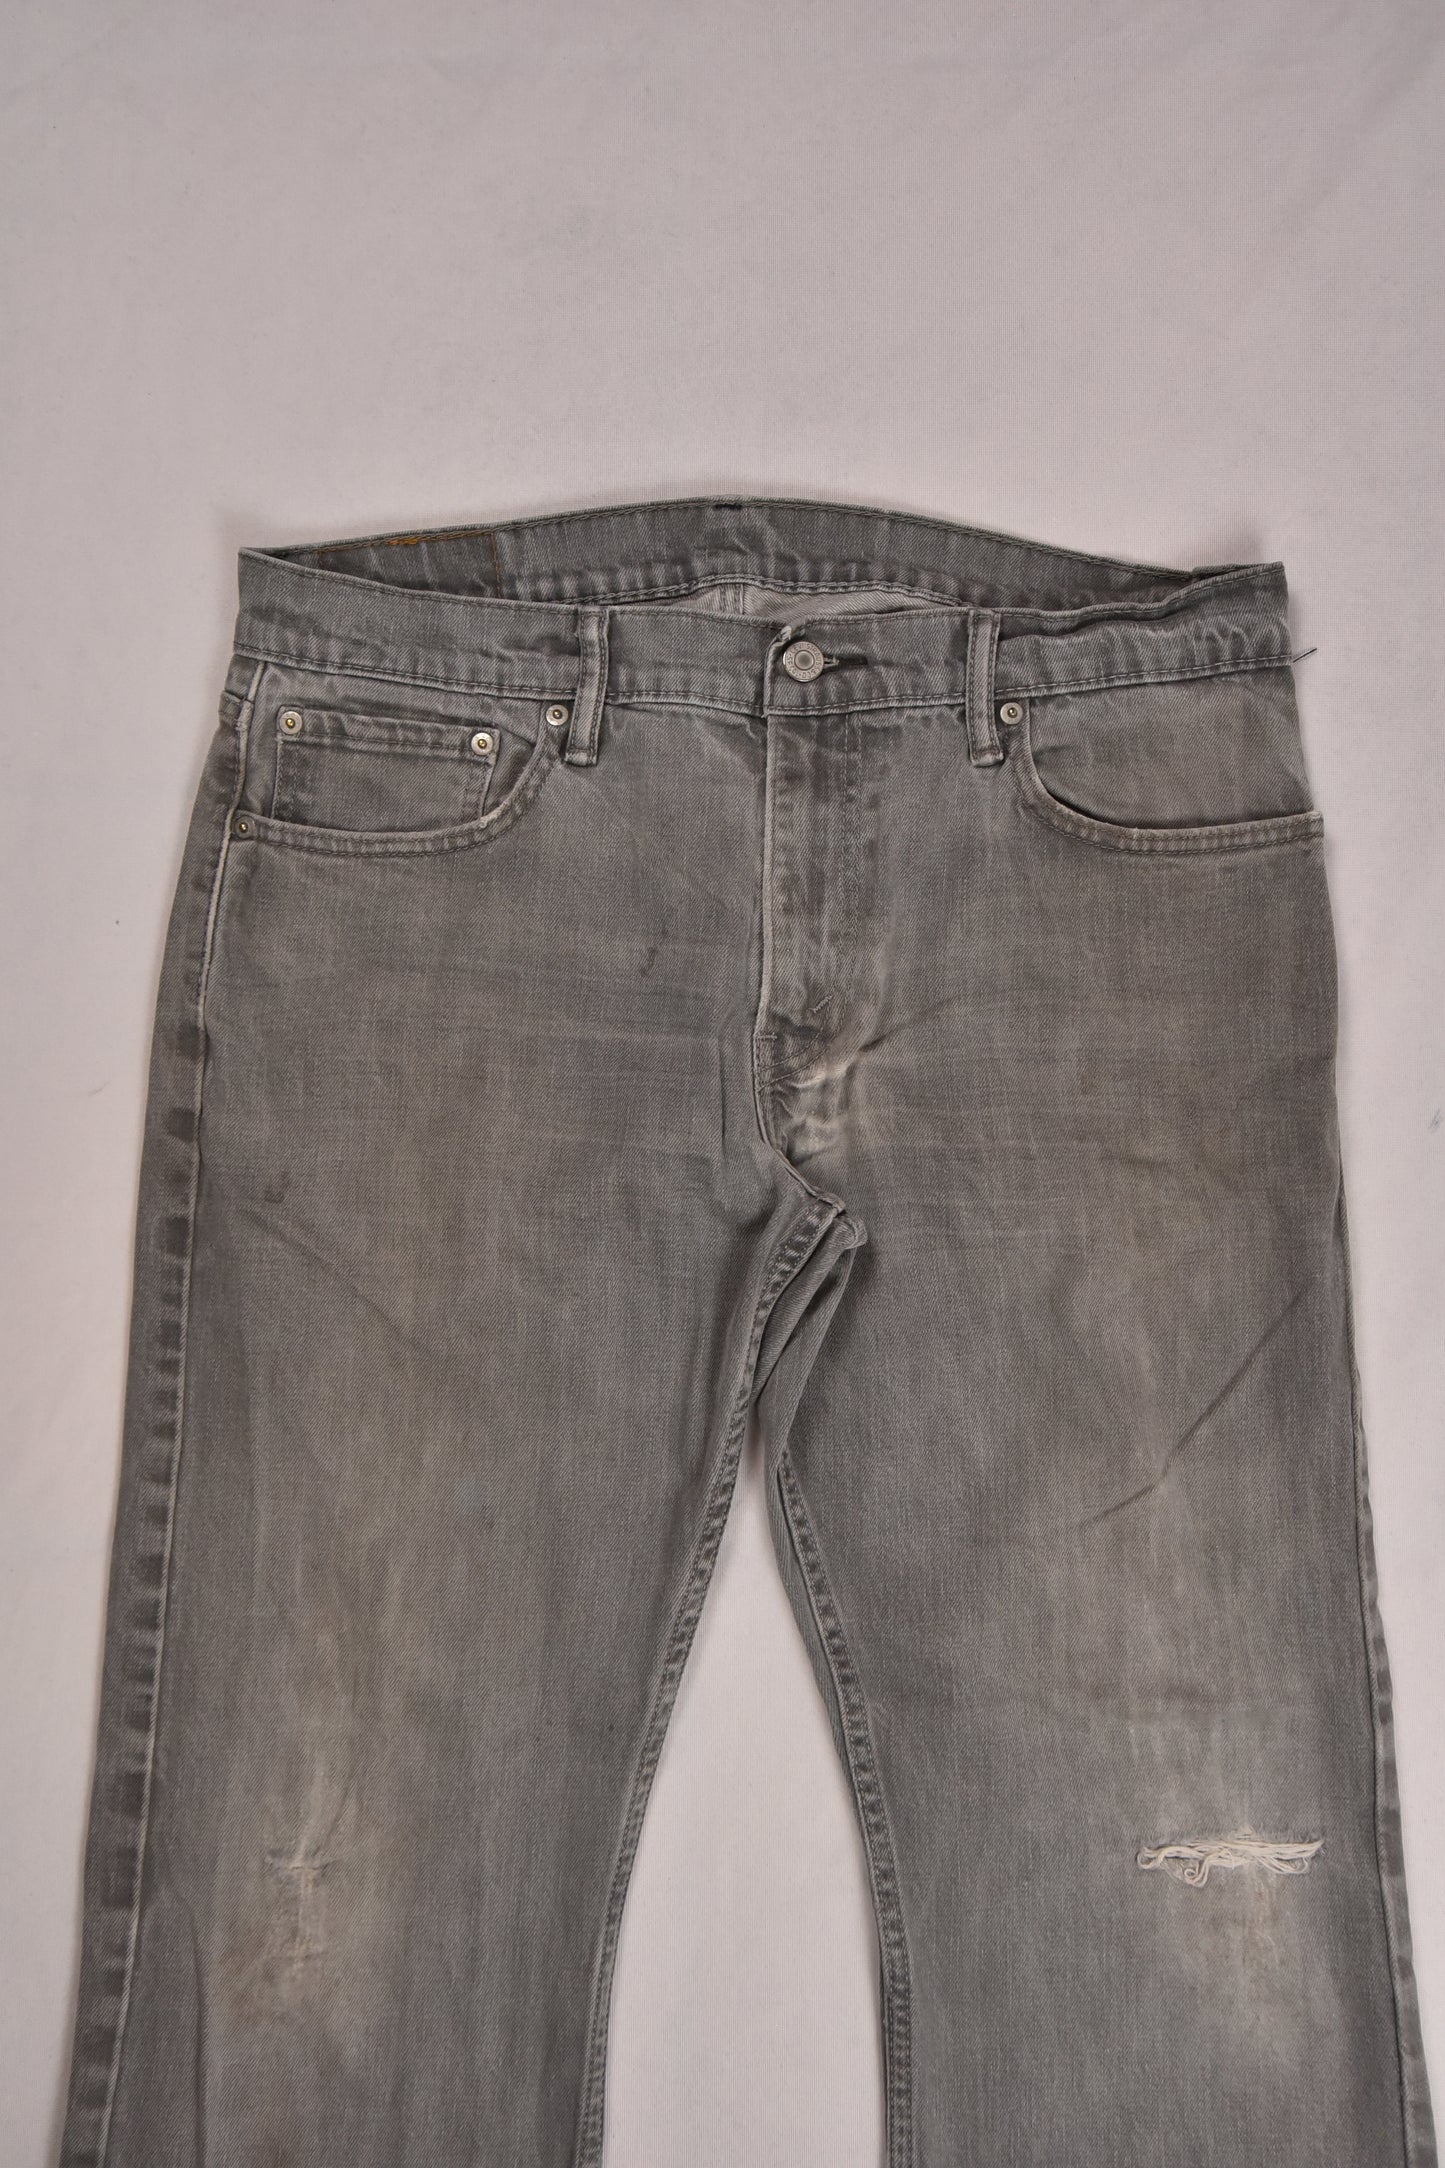 Jeans Levi's 514 Vintage / 34x30